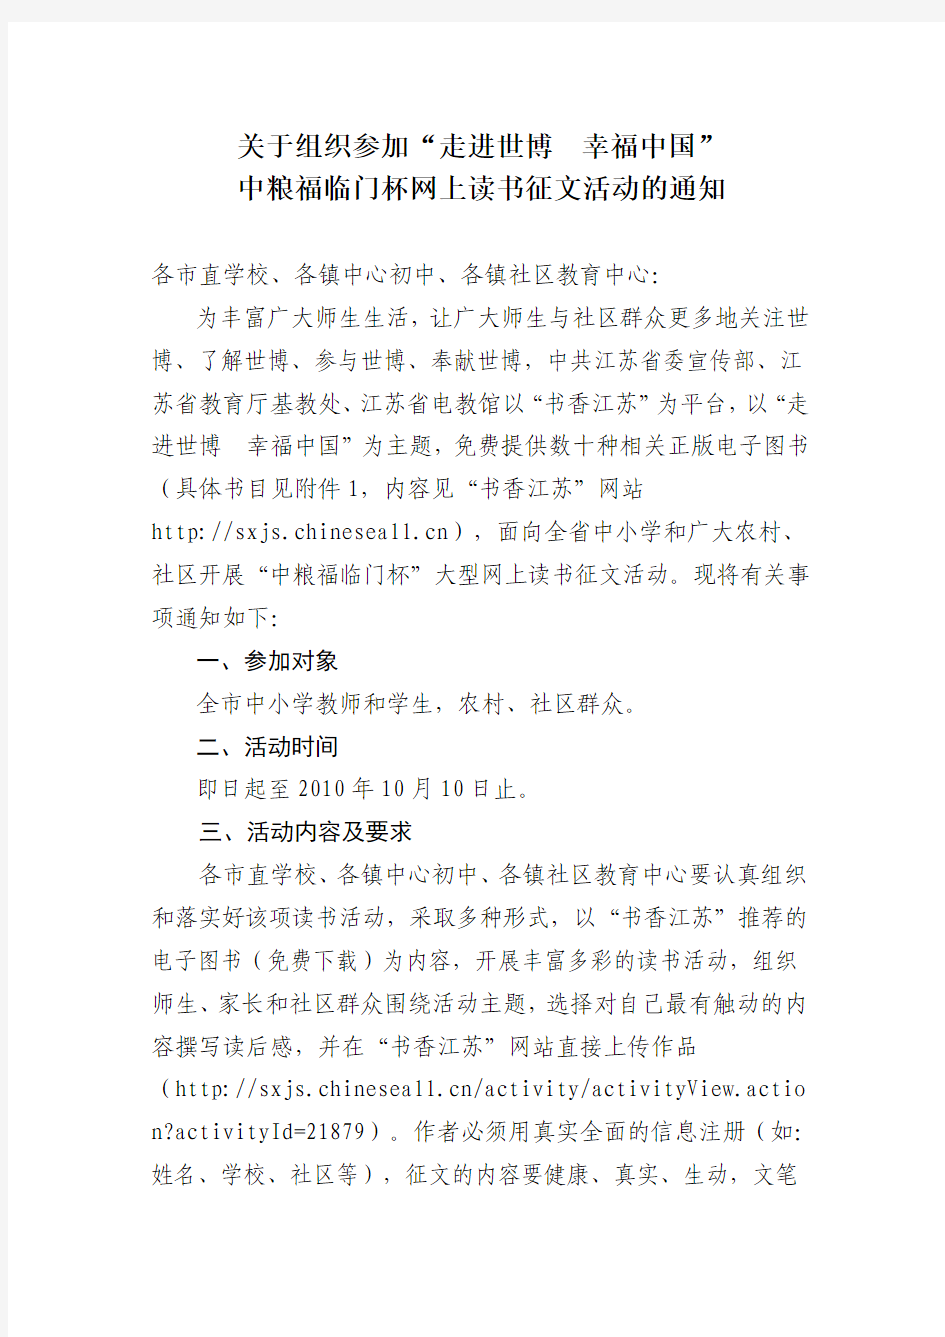 关于组织参加“走进世博  幸福中国”中粮福临门杯网上读书征文活动的通知